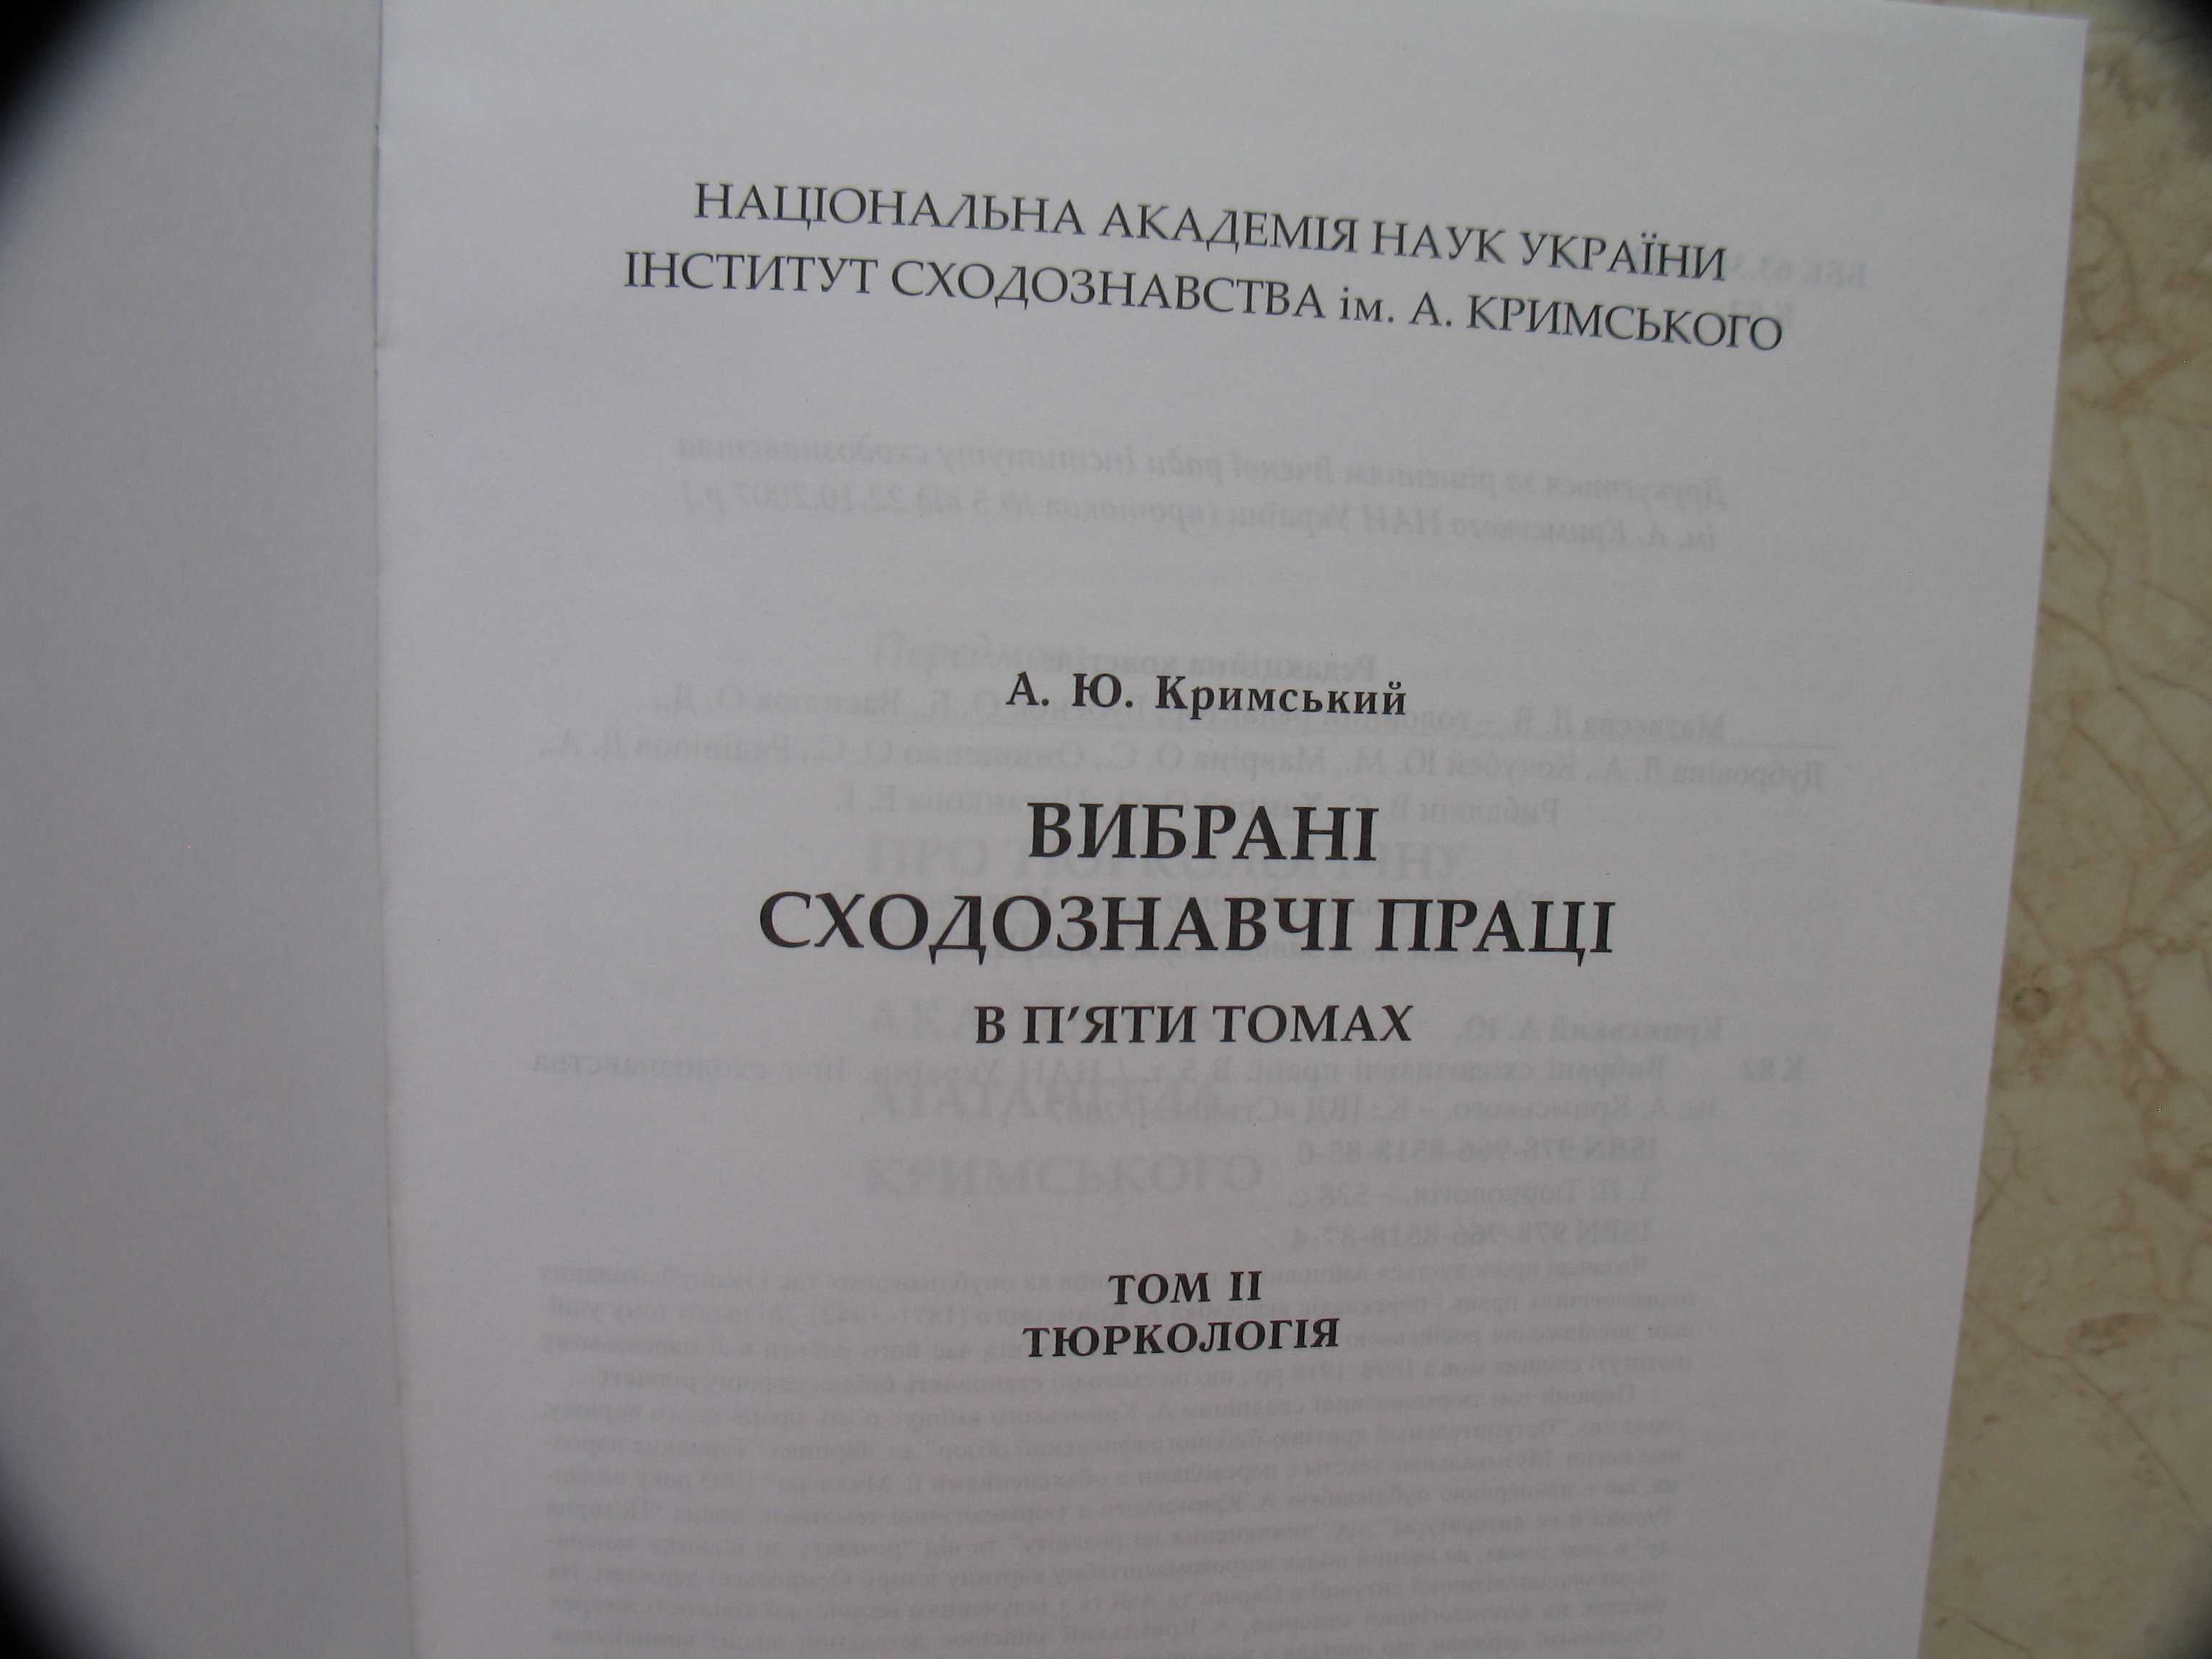 "Вибрані сходознавчі праці" в 5 томах, А.Ю. Кримський, .наклад 500 пр.